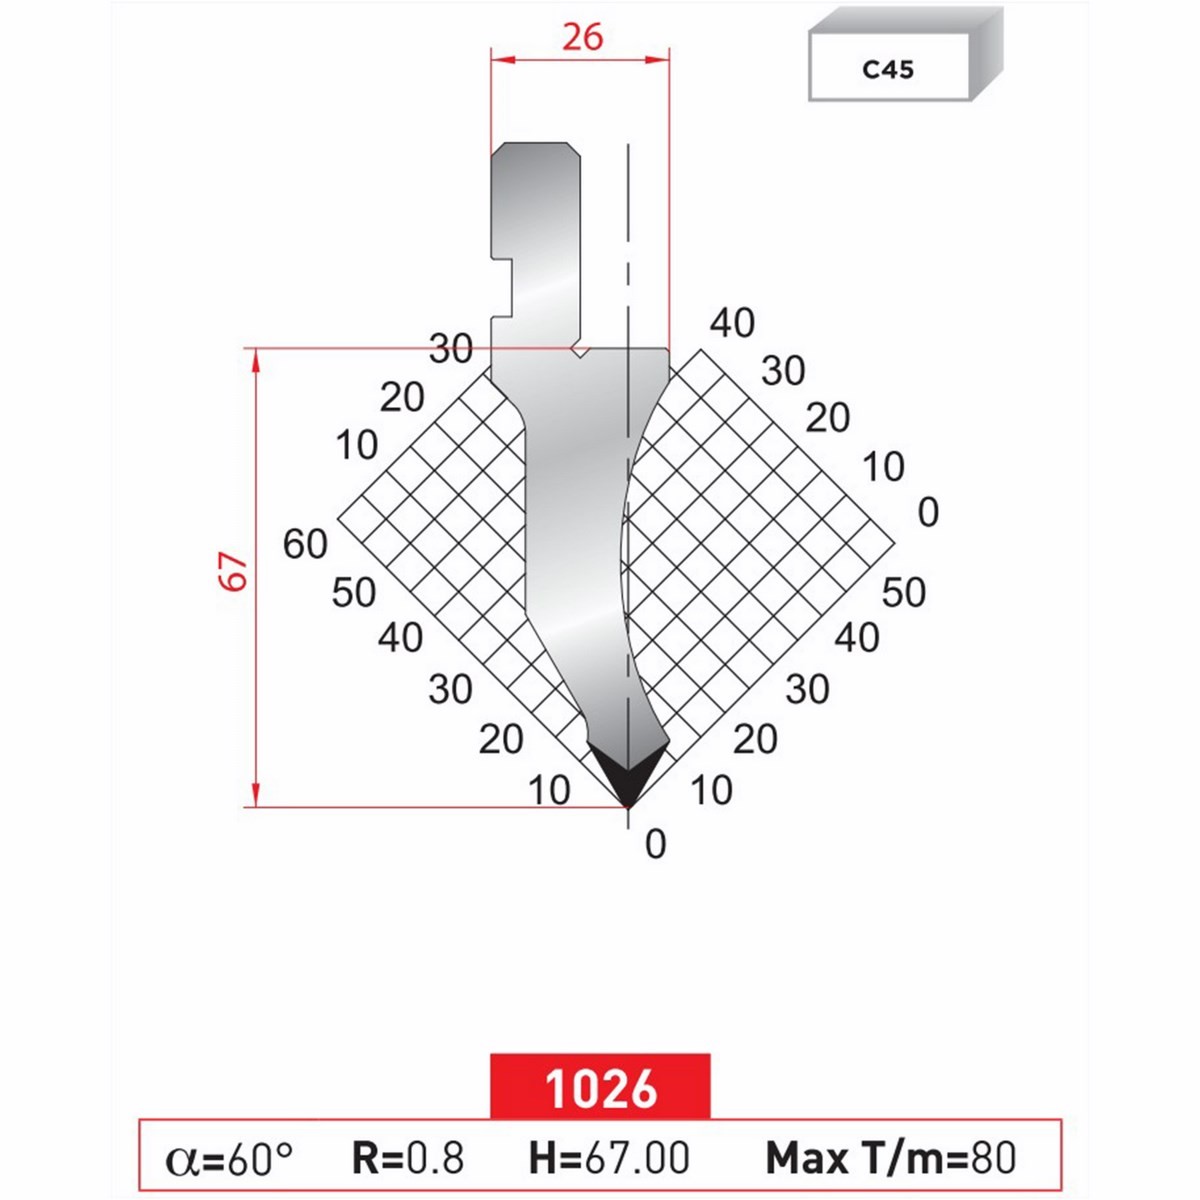 Poinçon 1026 Lg: 805 mm Fractionné